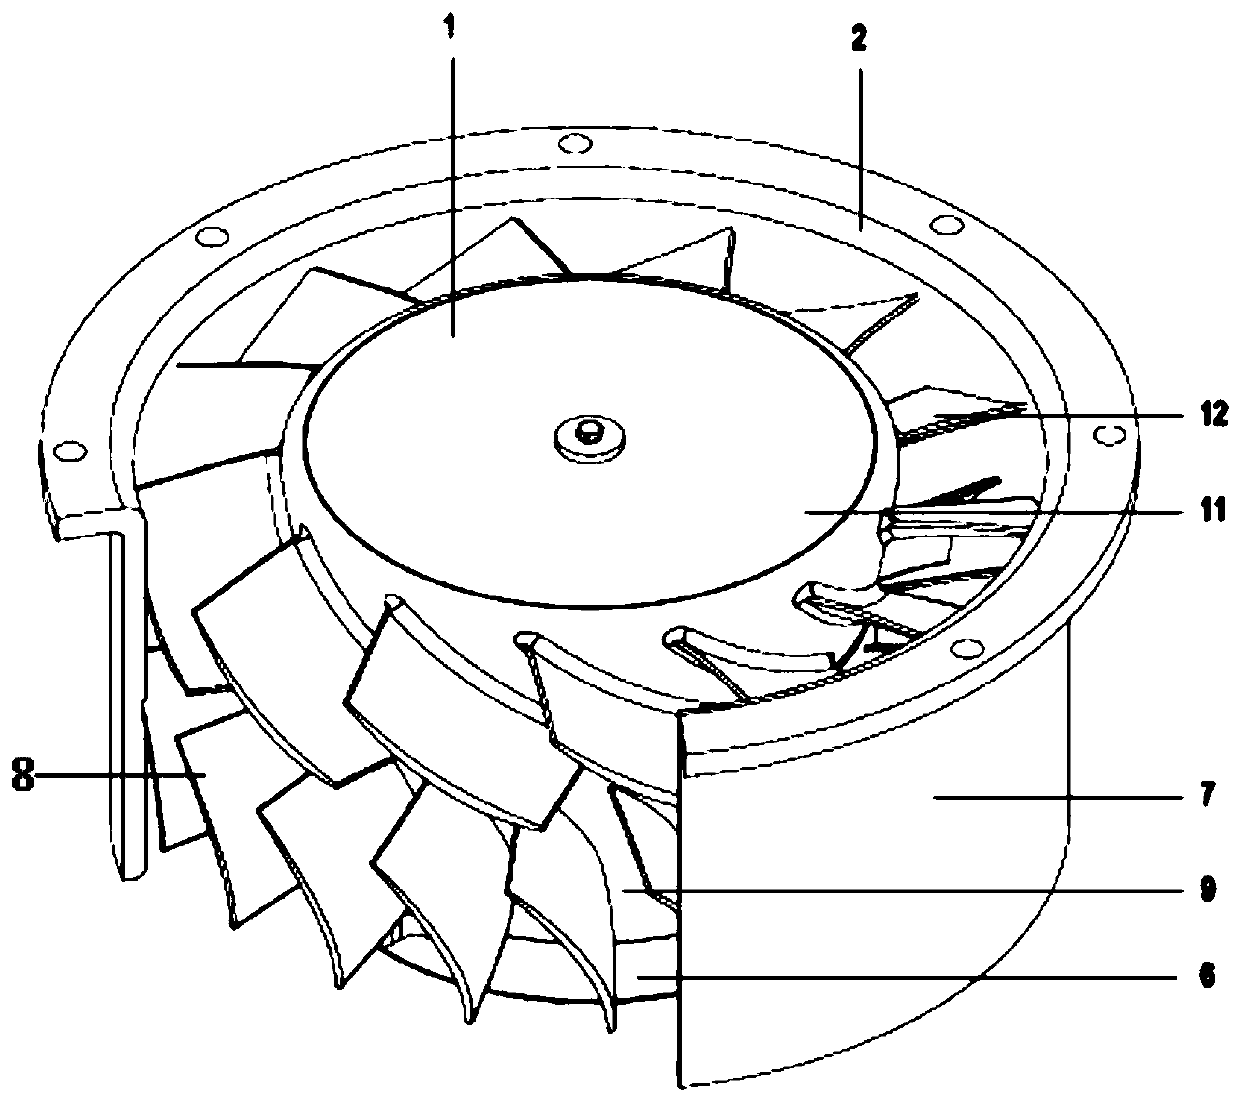 Motor embedded impeller type integral flow channel axial flow fan